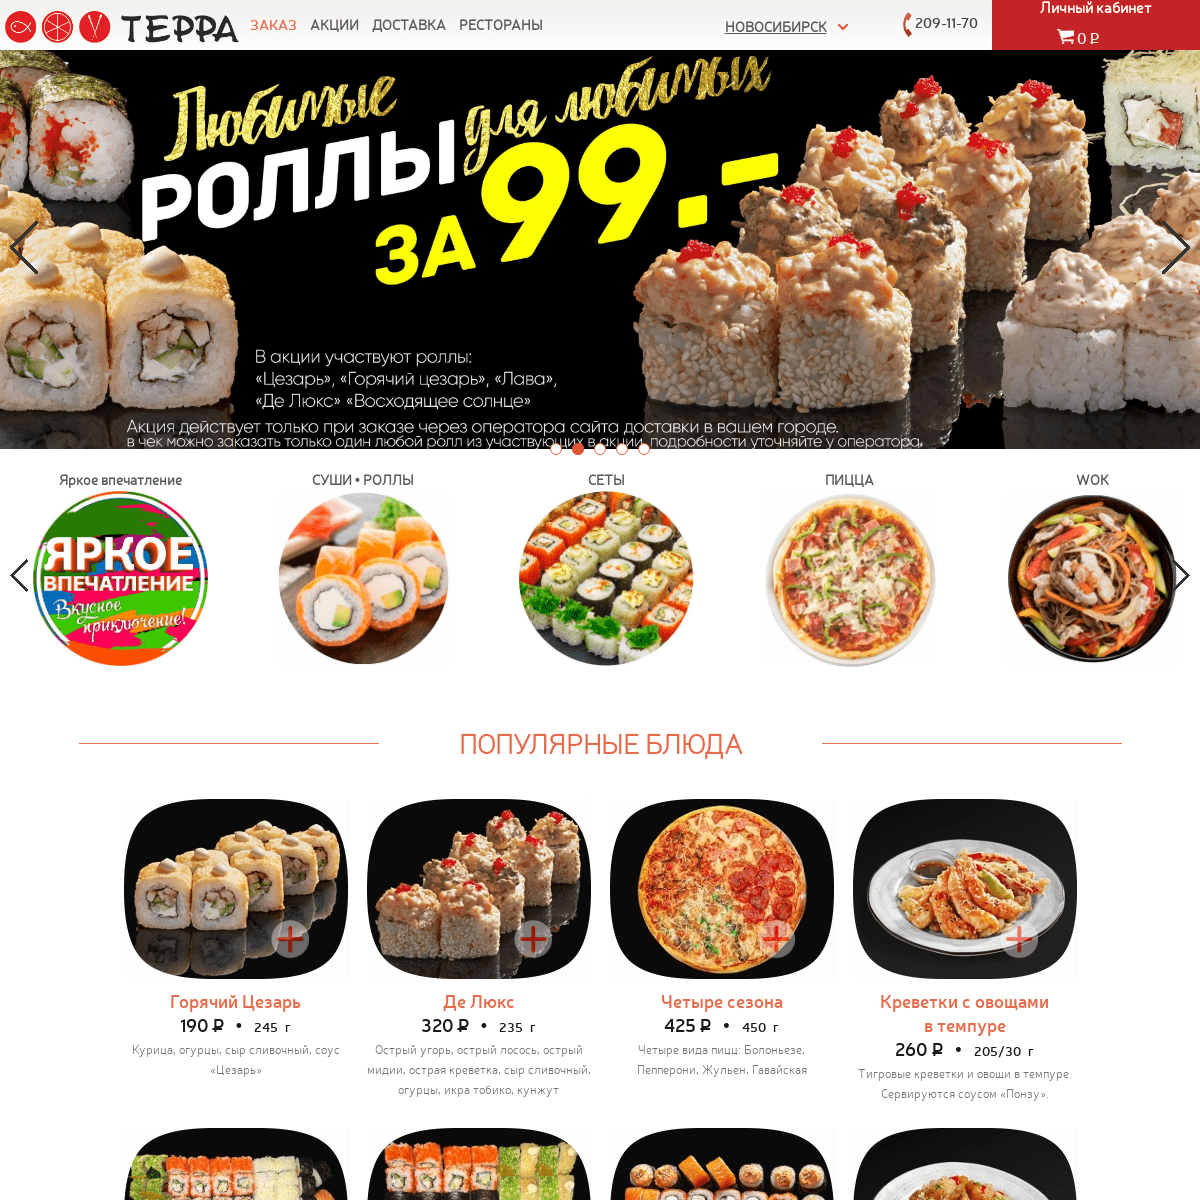 A complete backup of sushi-terra.ru